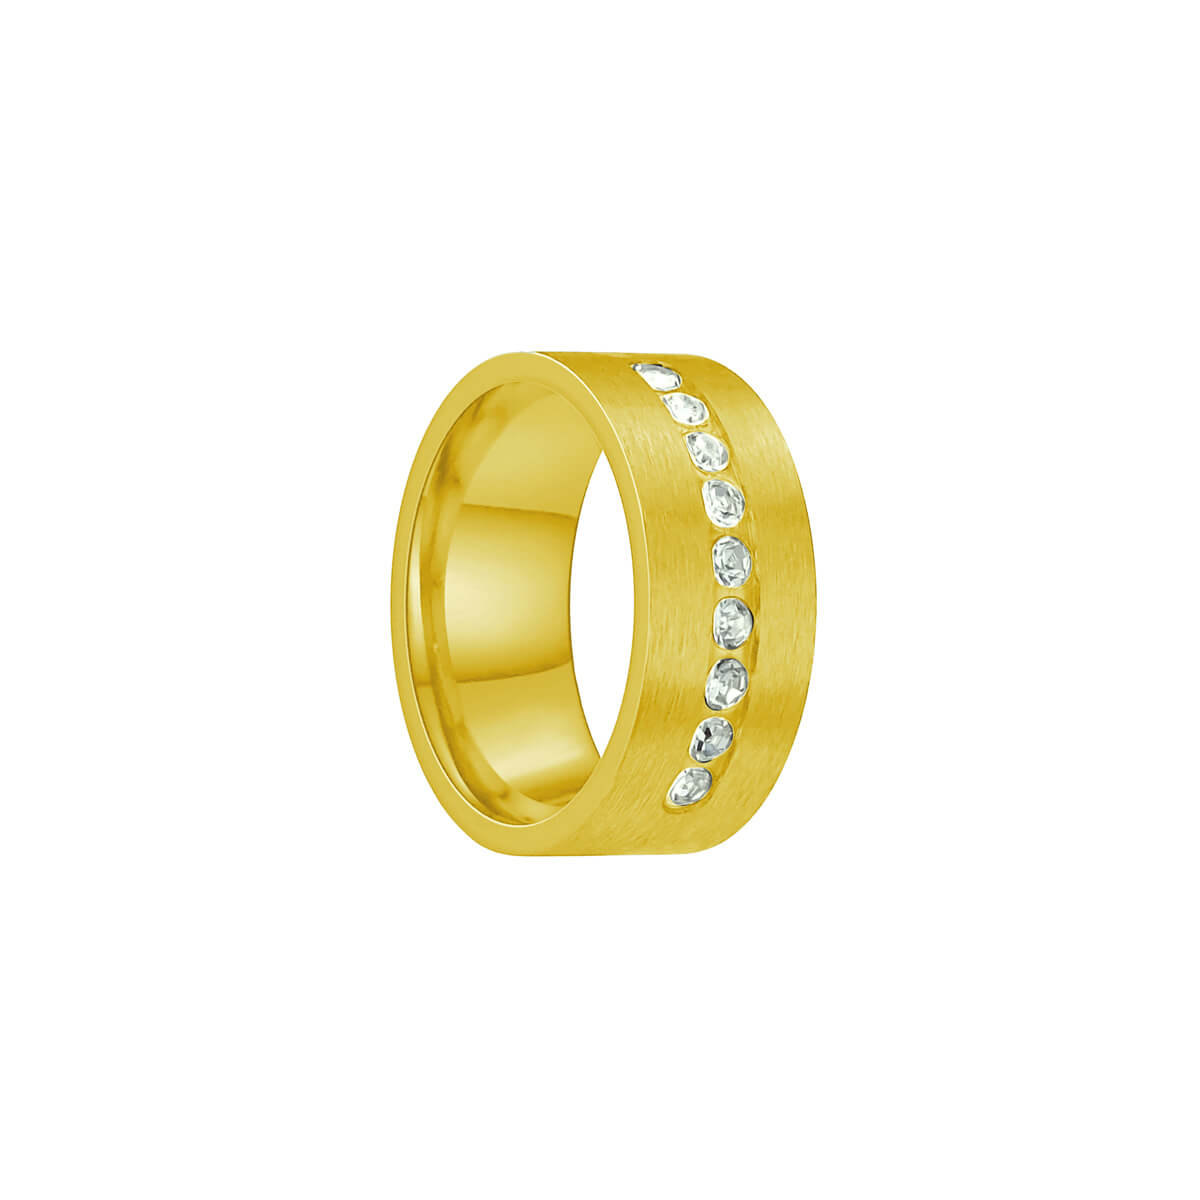 Guldfärgad bred ring i borstat stål med strass (Stål 316L)